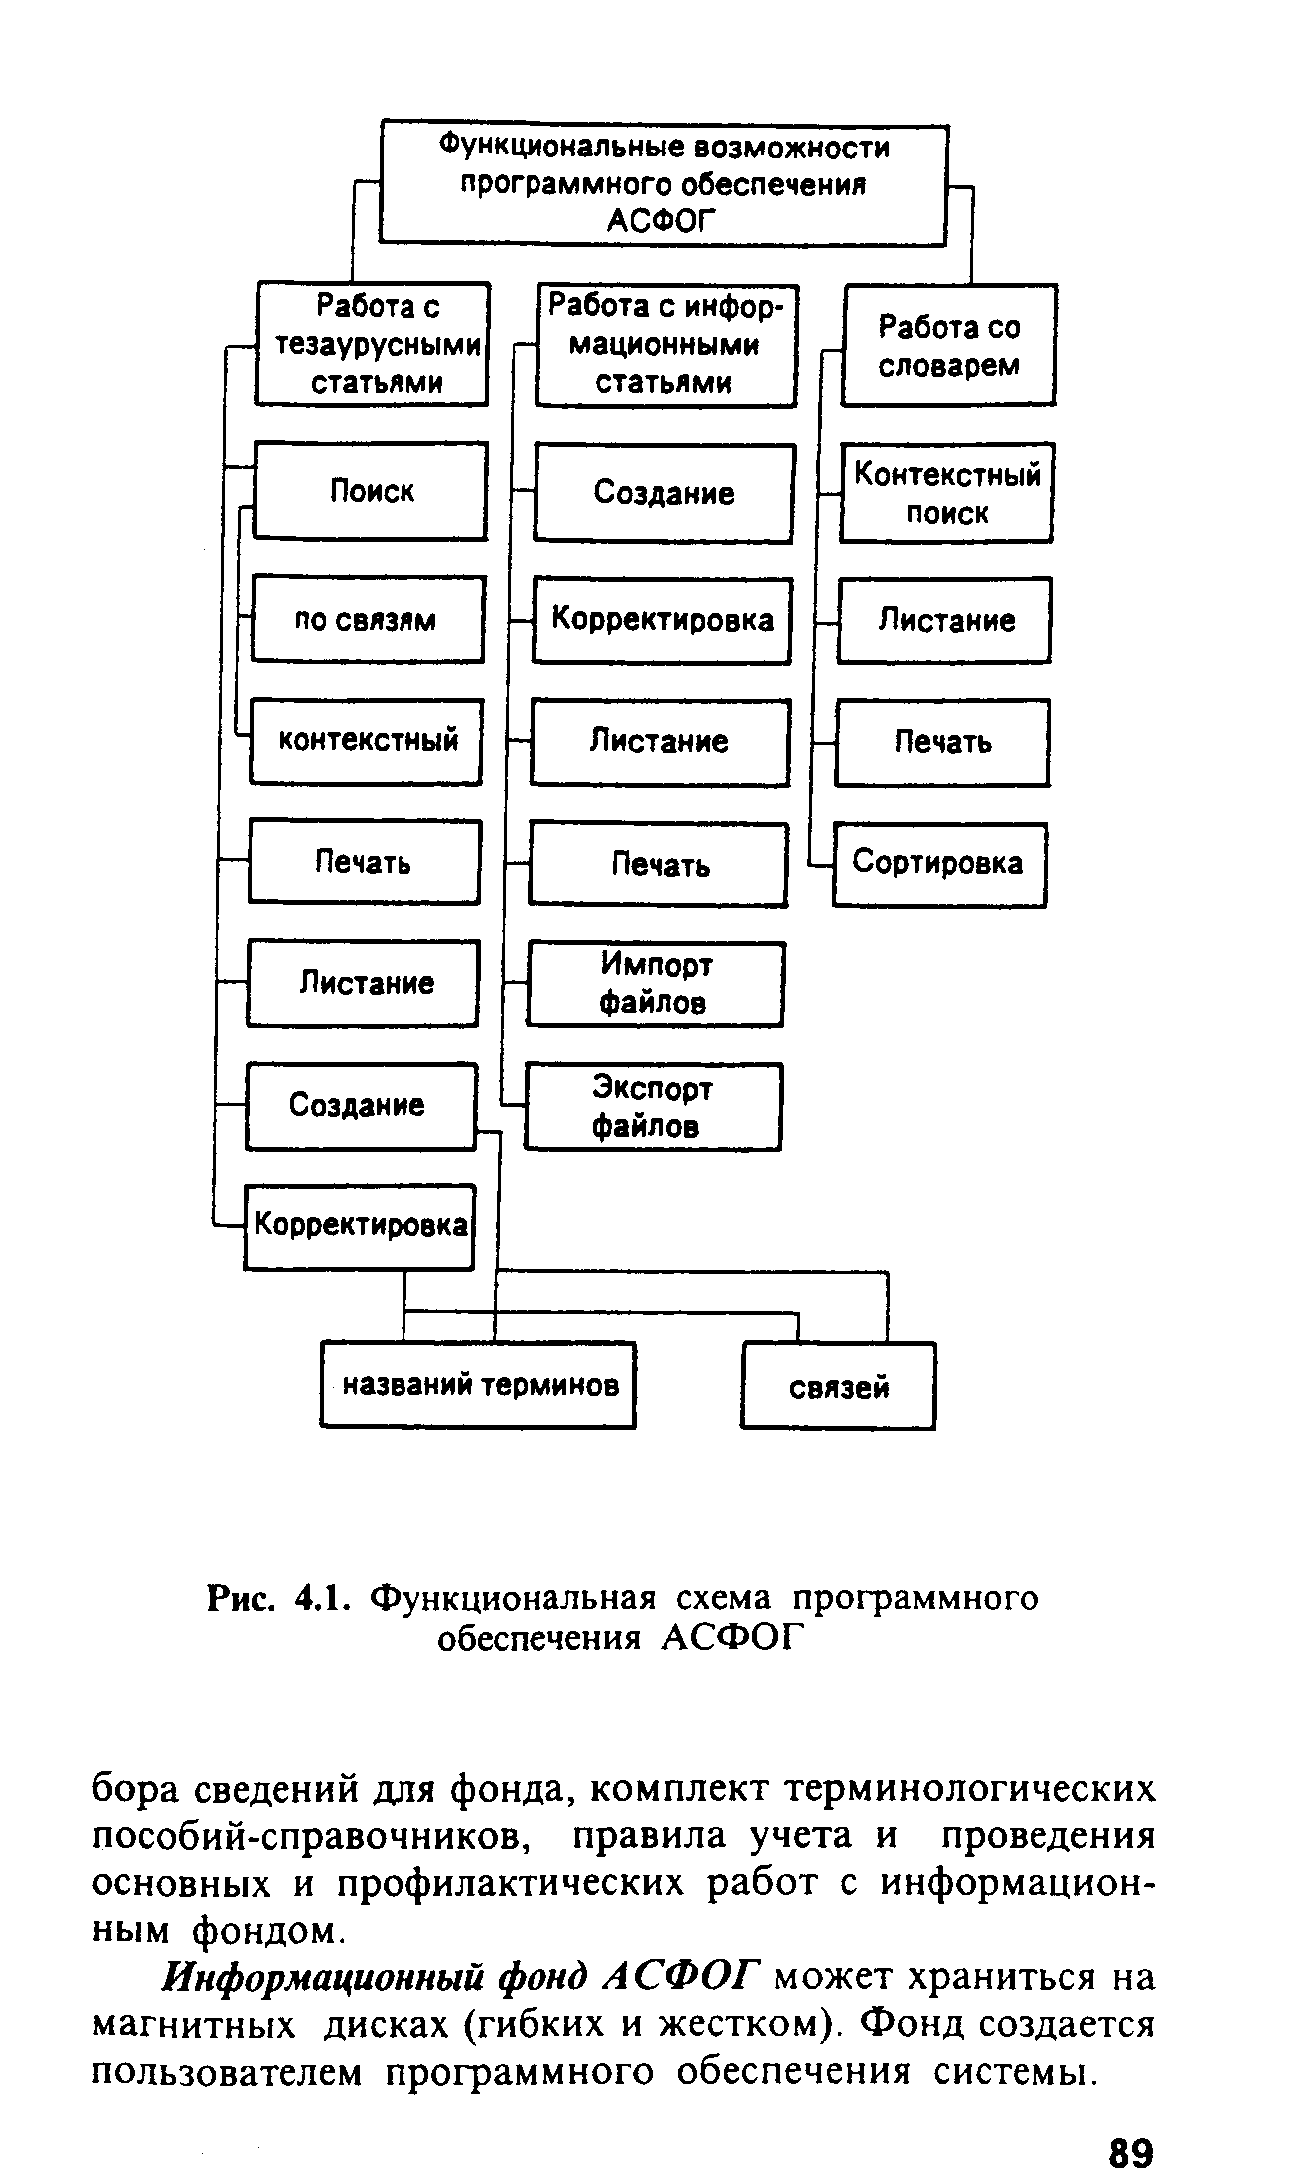 Рис. 4.1. Функциональная схема программного обеспечения АСФОГ
